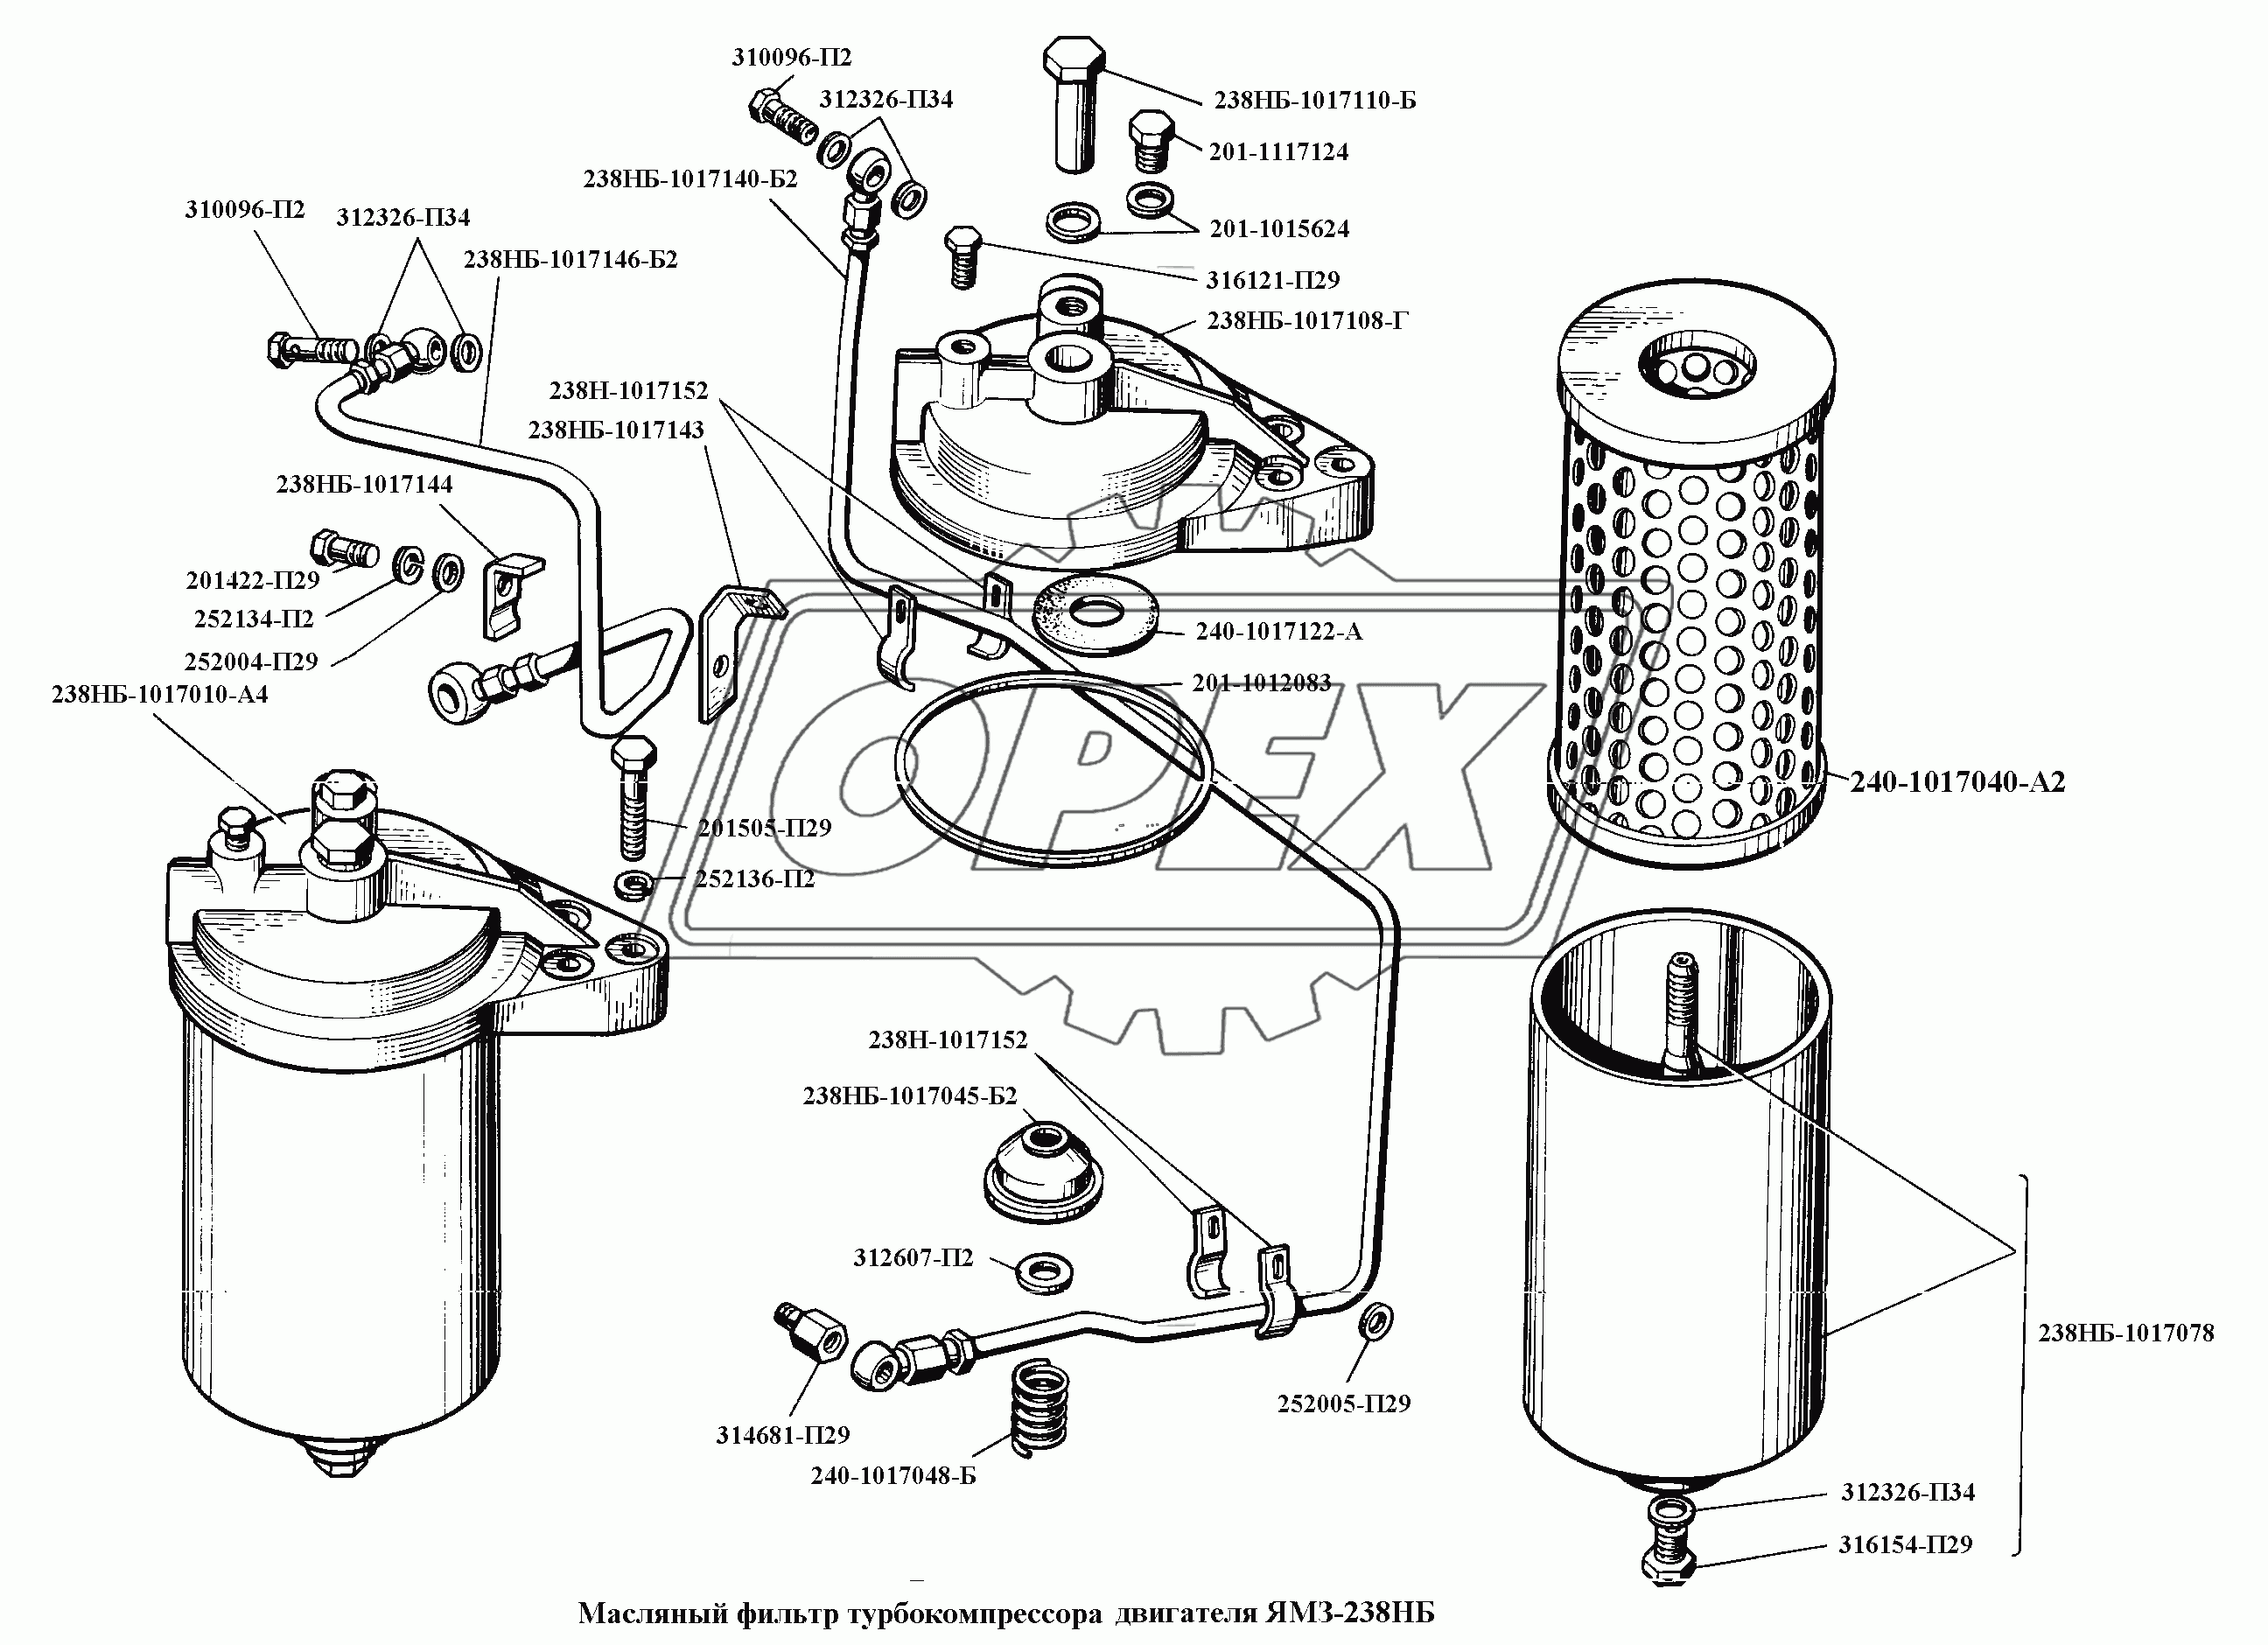 Масляный фильтр турбокомпрессора двигателя ЯМЗ-238НБ